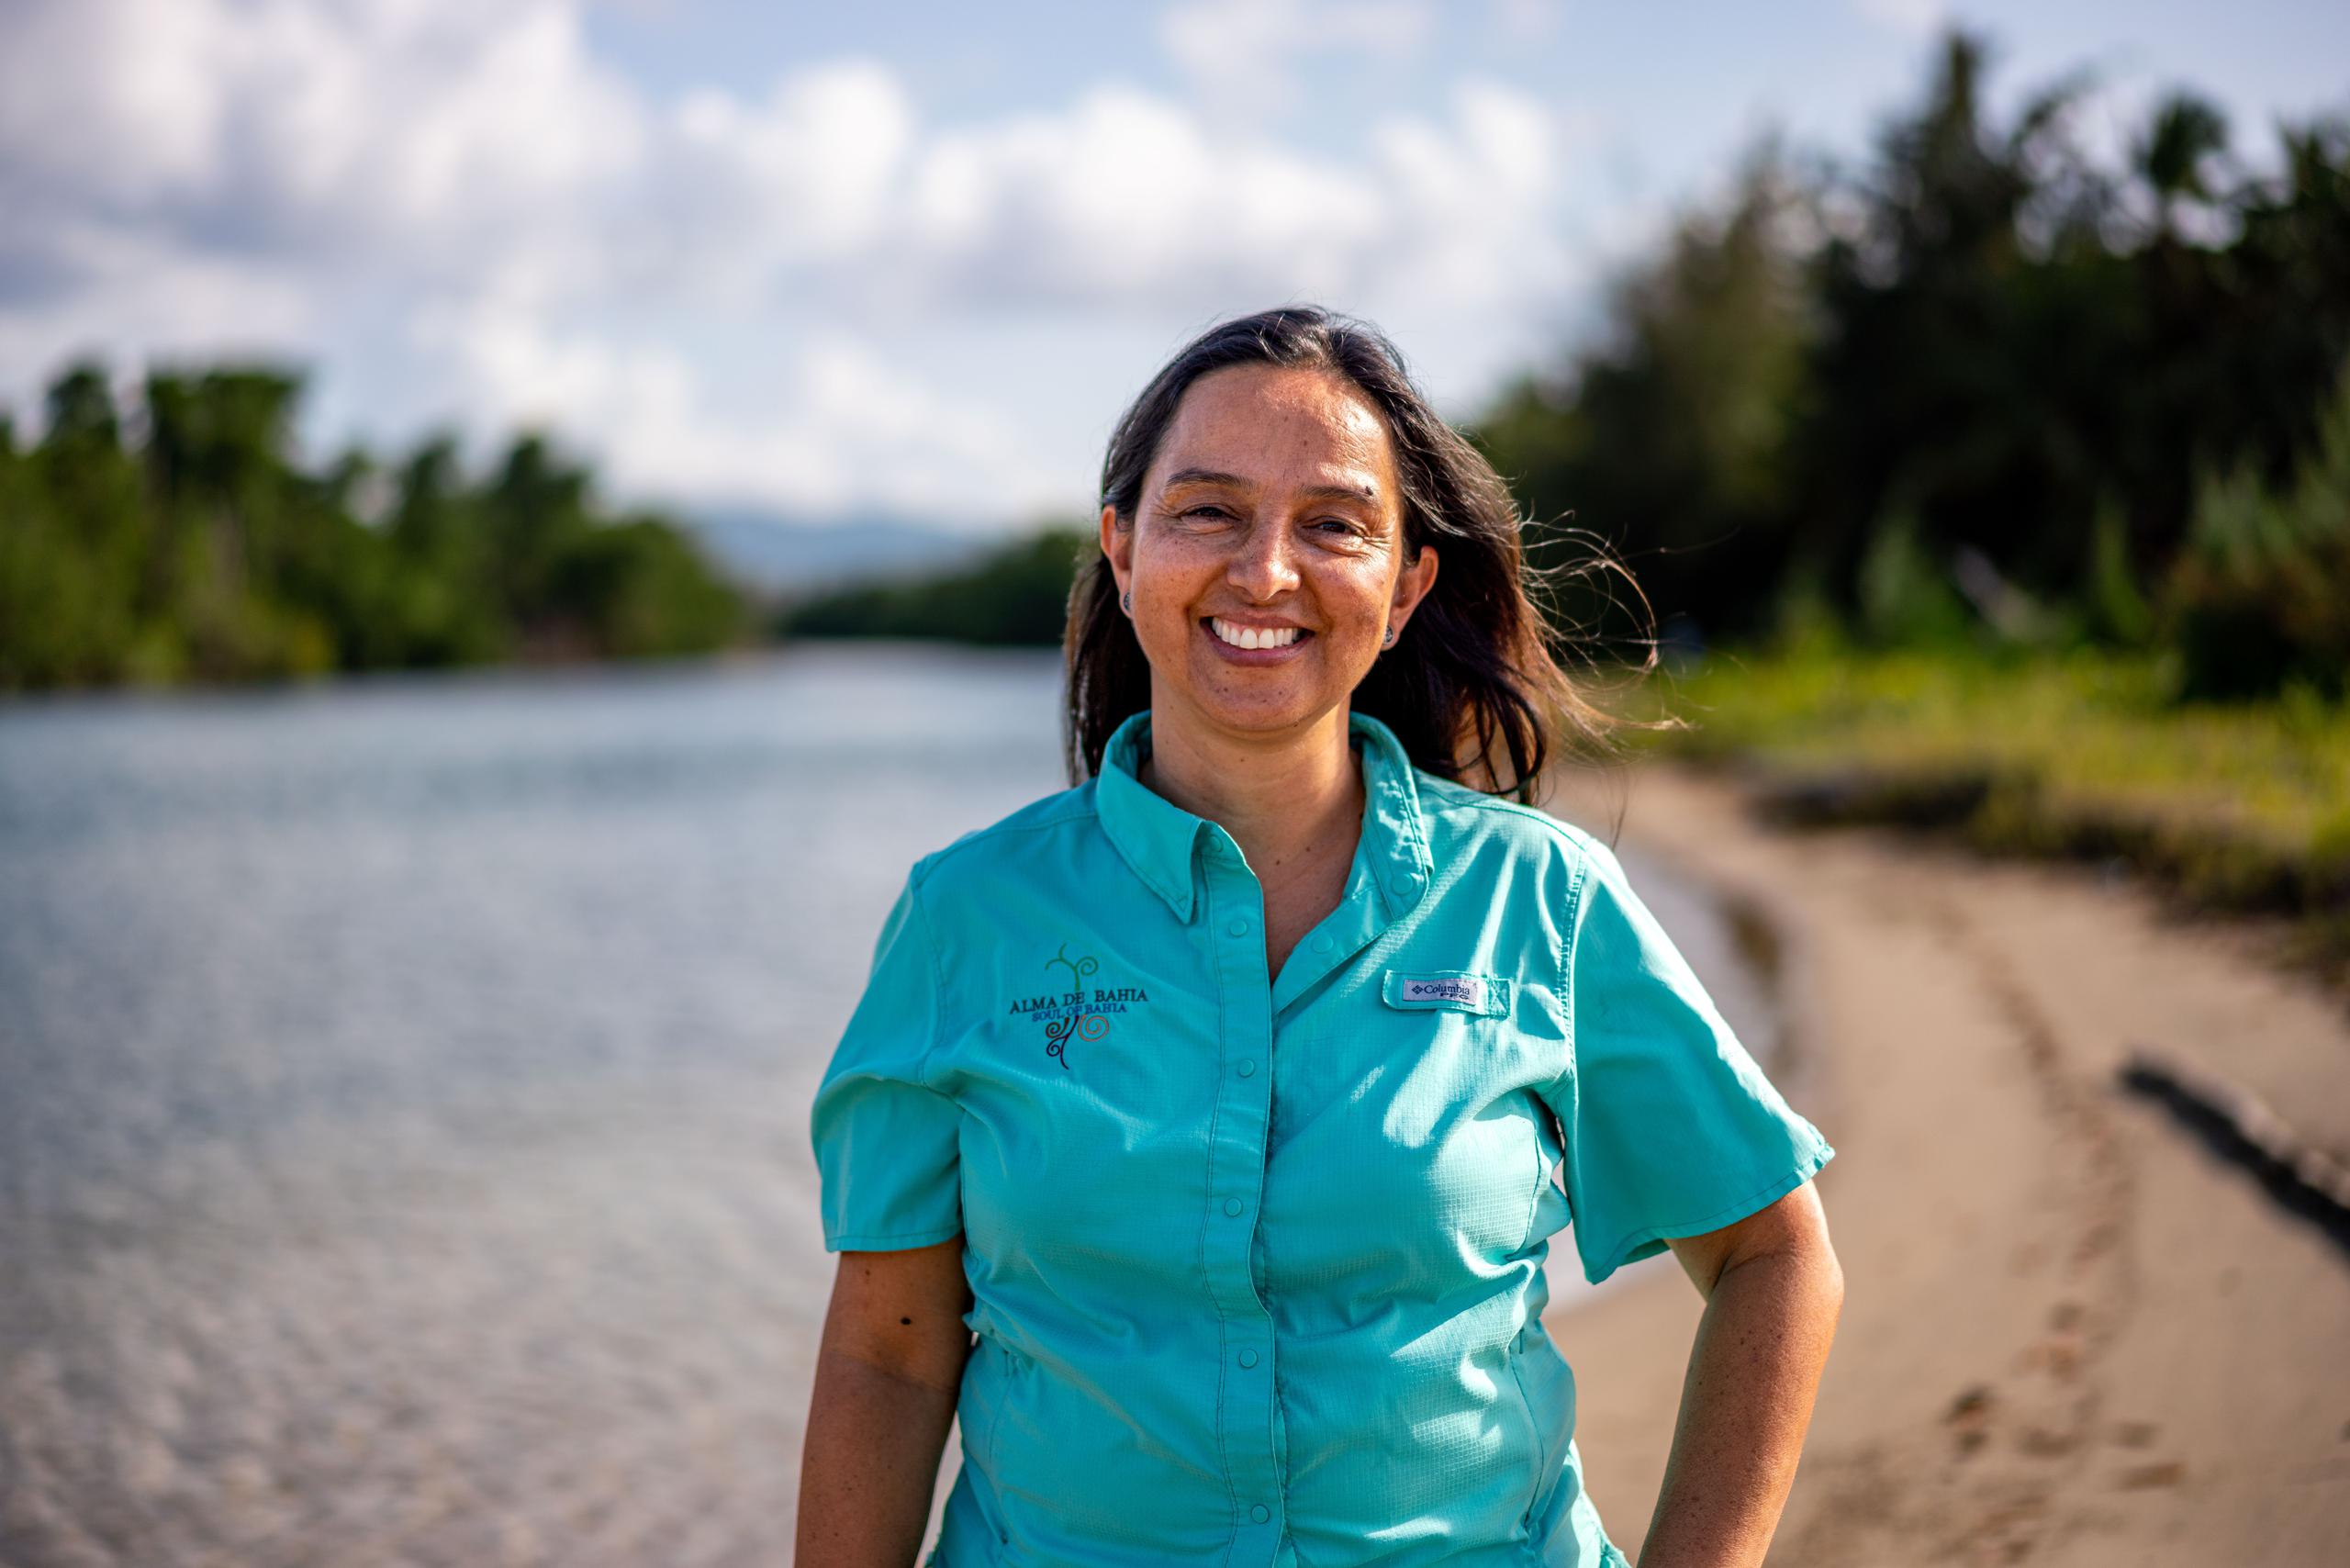 La bióloga Marcela Cañón, al frente de la Fundació Alma de Bahía, se encarga de cuidar, proteger y educar sobre la desembocadura y estuario del río Espíritu Santo, un lugar rico en biodiversidad marina y terrestre. 